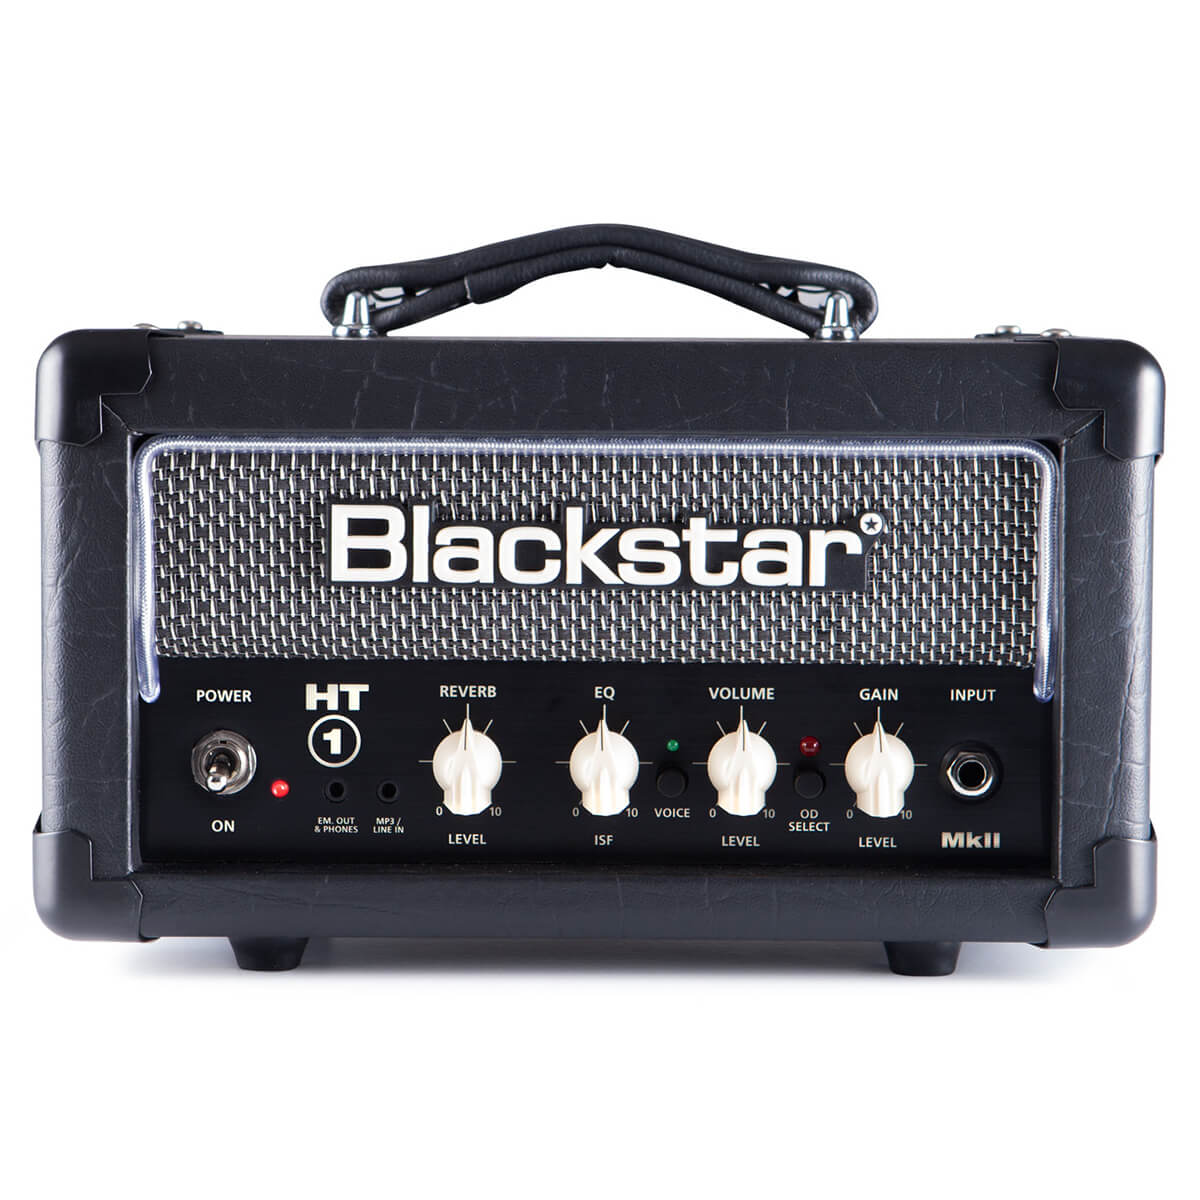 Blackstar tone link - Unser Favorit 